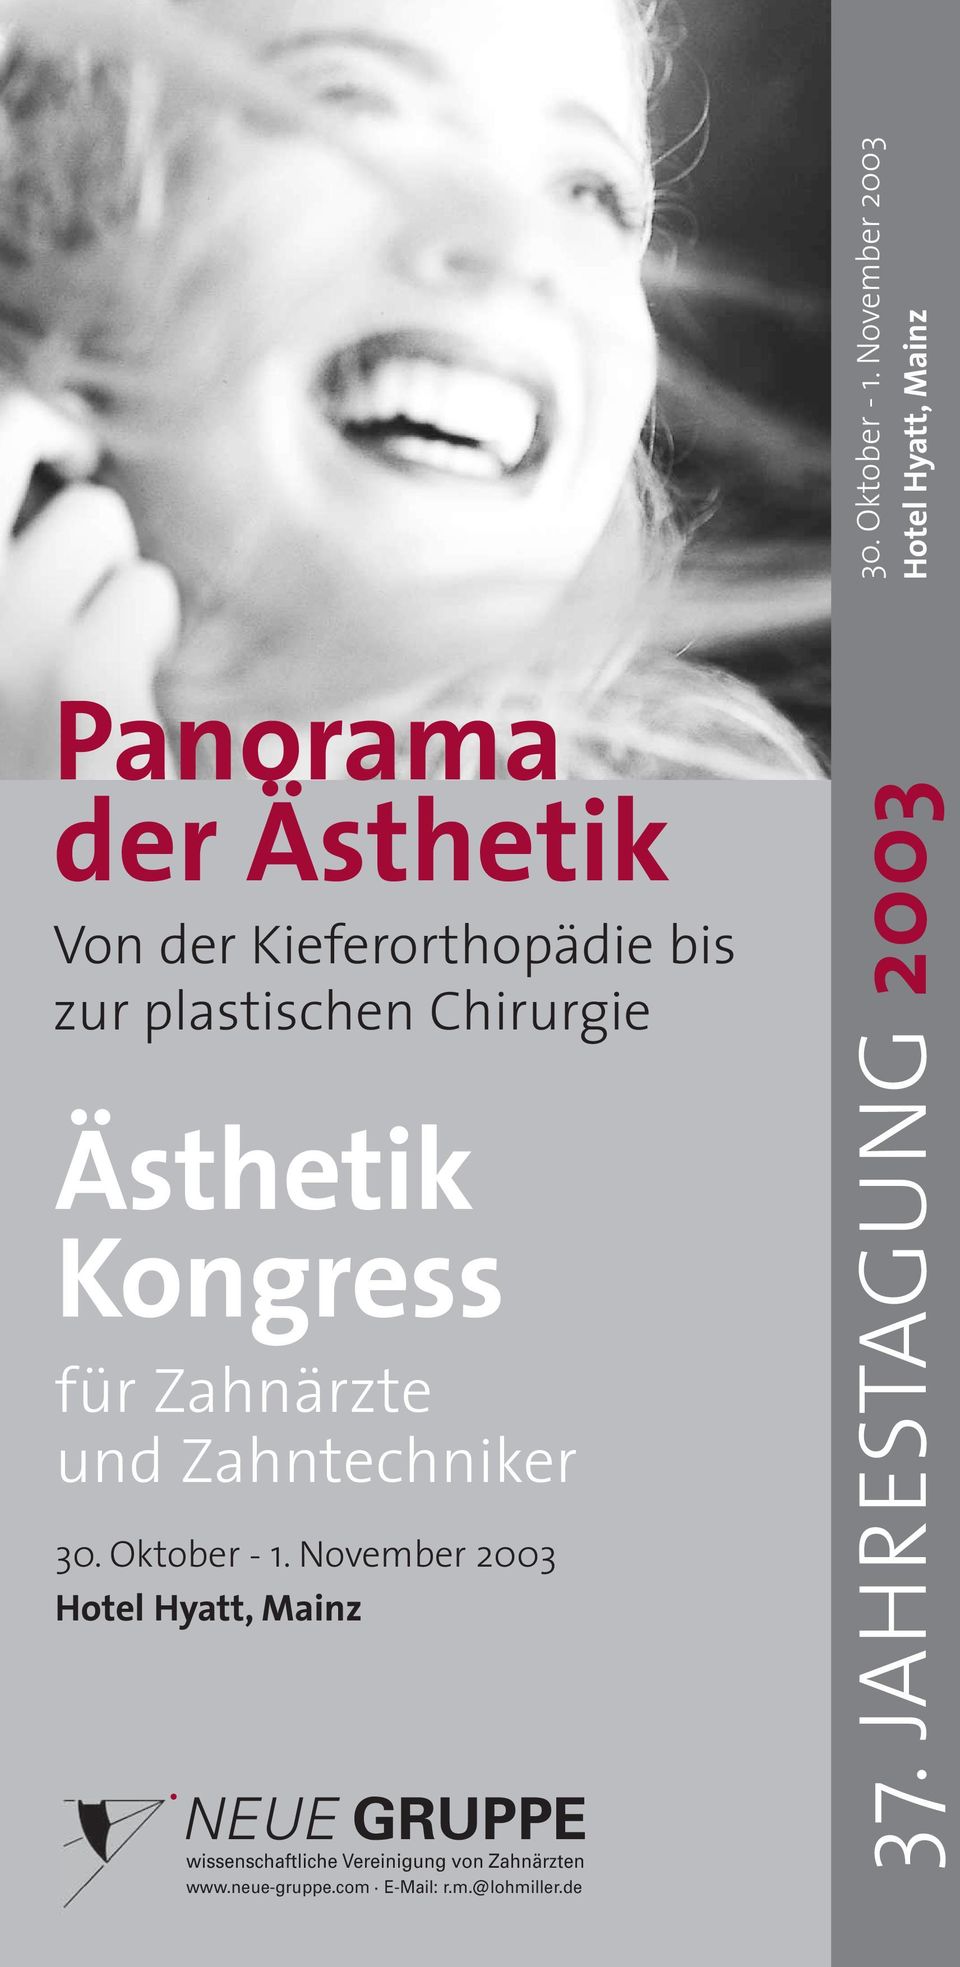 plastischen Chirurgie Ästhetik Kongress für Zahnärzte und Zahntechniker  November 2003